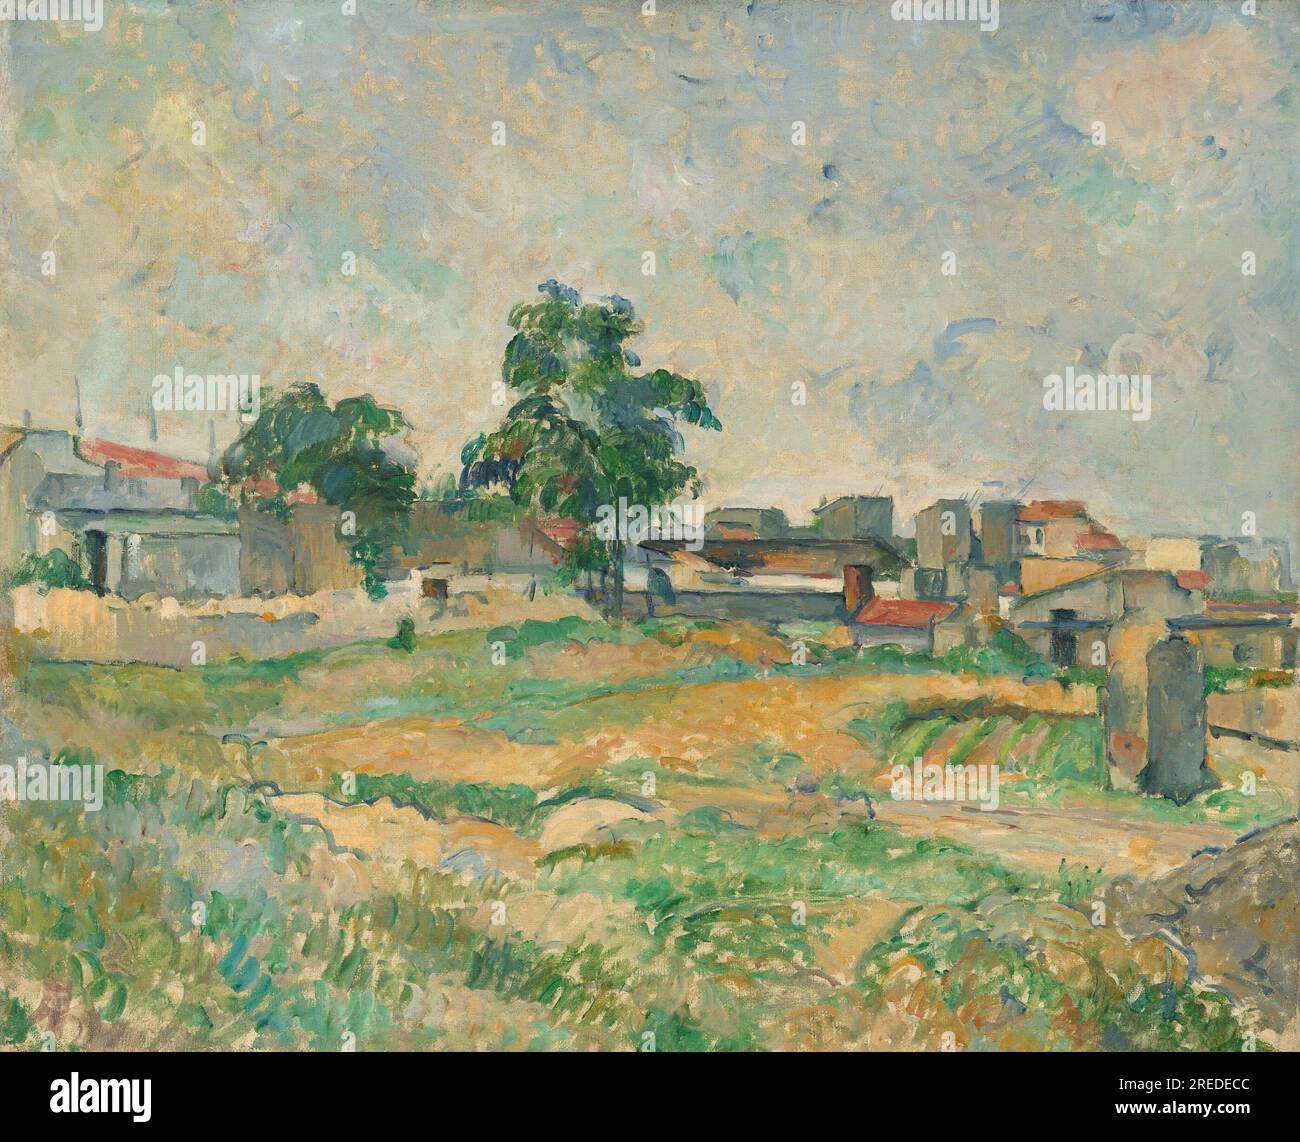 Titolo: Paesaggio vicino a Parigi Creatore: Paul Cézanne Data: 1877 dimensioni: 50,2 x 60 cm Medio: Olio su tela luogo: National Gallery of Art, Washington, D.C. Foto Stock